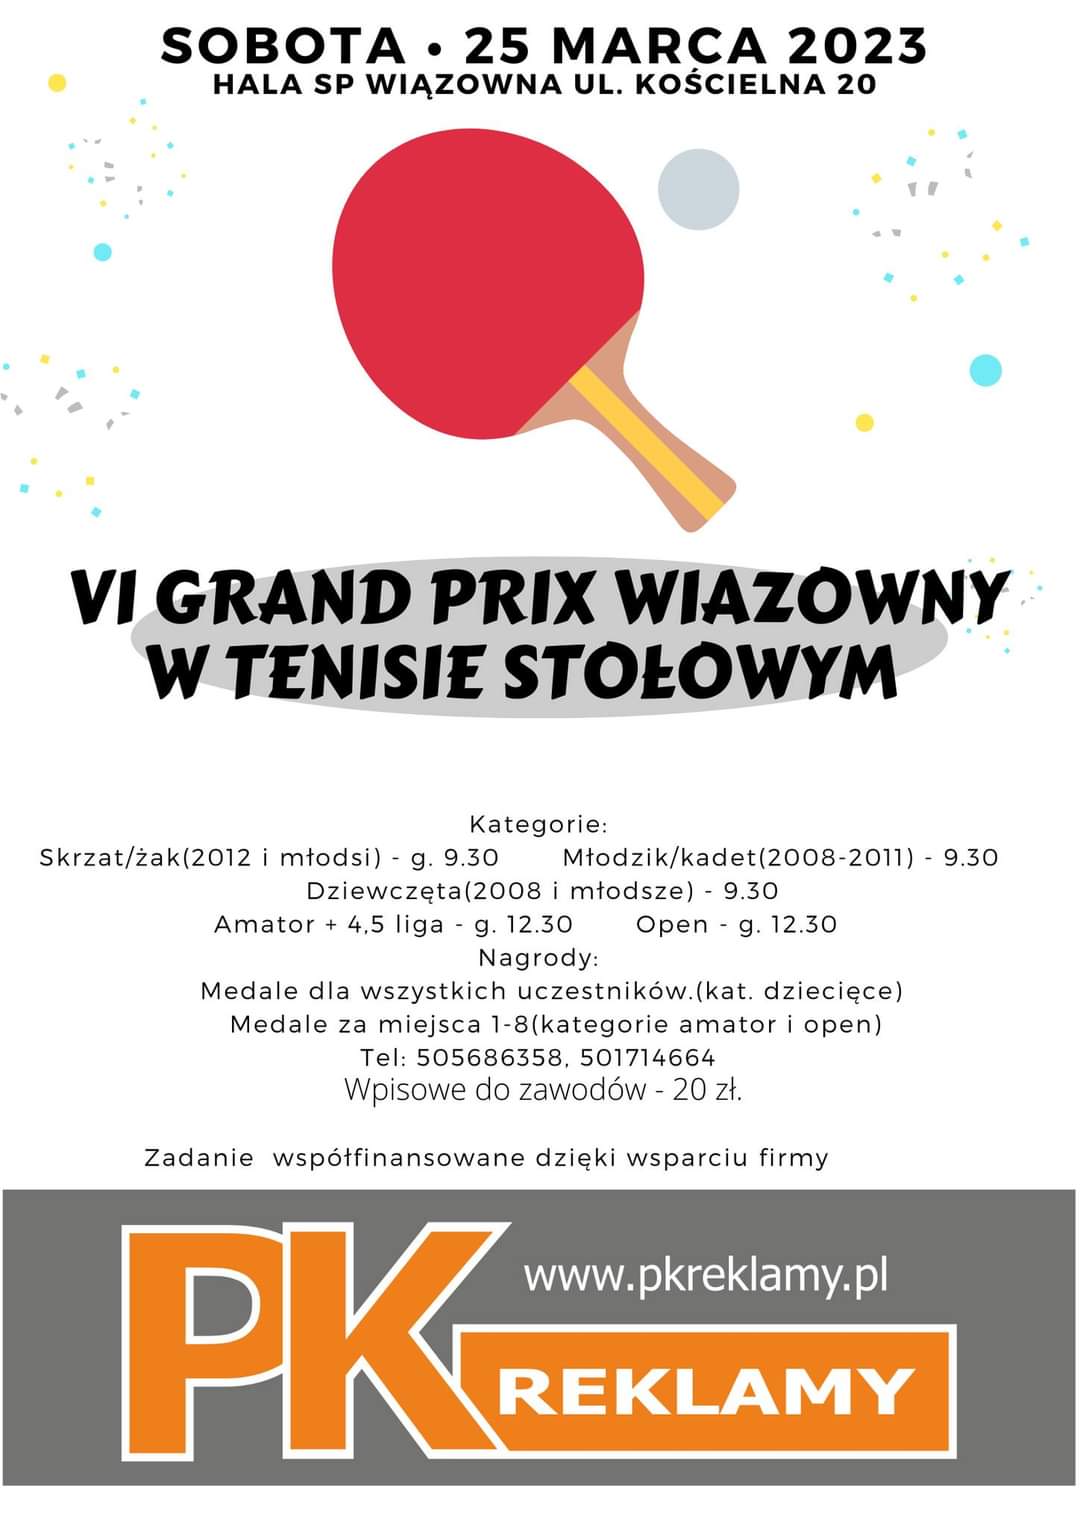 VI Grand Prix Wiązowny w tenisie stołowym 25 marca w szkol w Wiązownie.